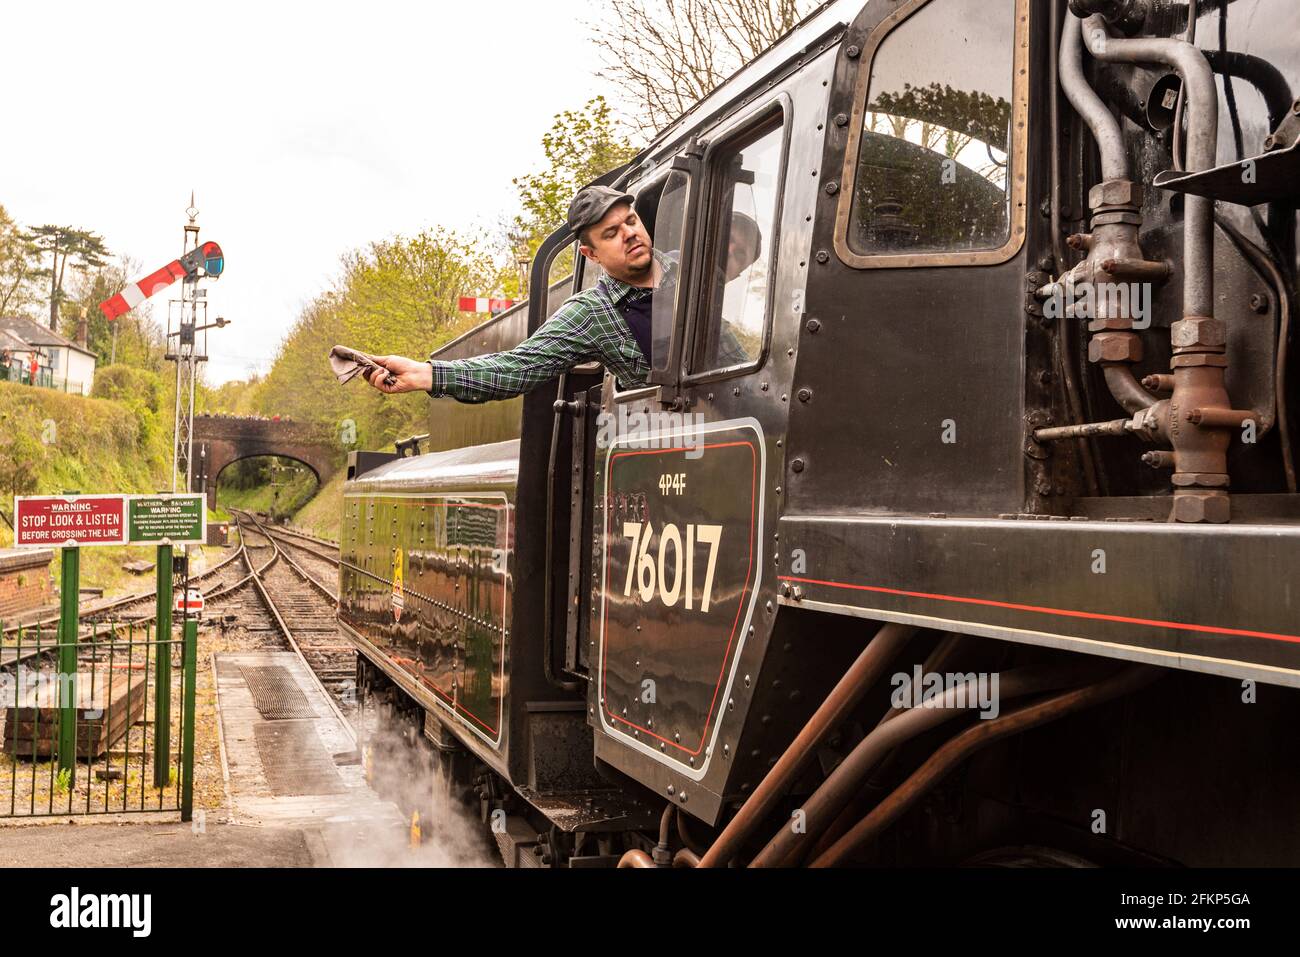 Un chauffeur de train à vapeur signale qu'il est prêt à partir sur la ligne Watercress, Mid Hants Railway, un chemin de fer à vapeur historique, Alresford, Hampshire, Royaume-Uni Banque D'Images